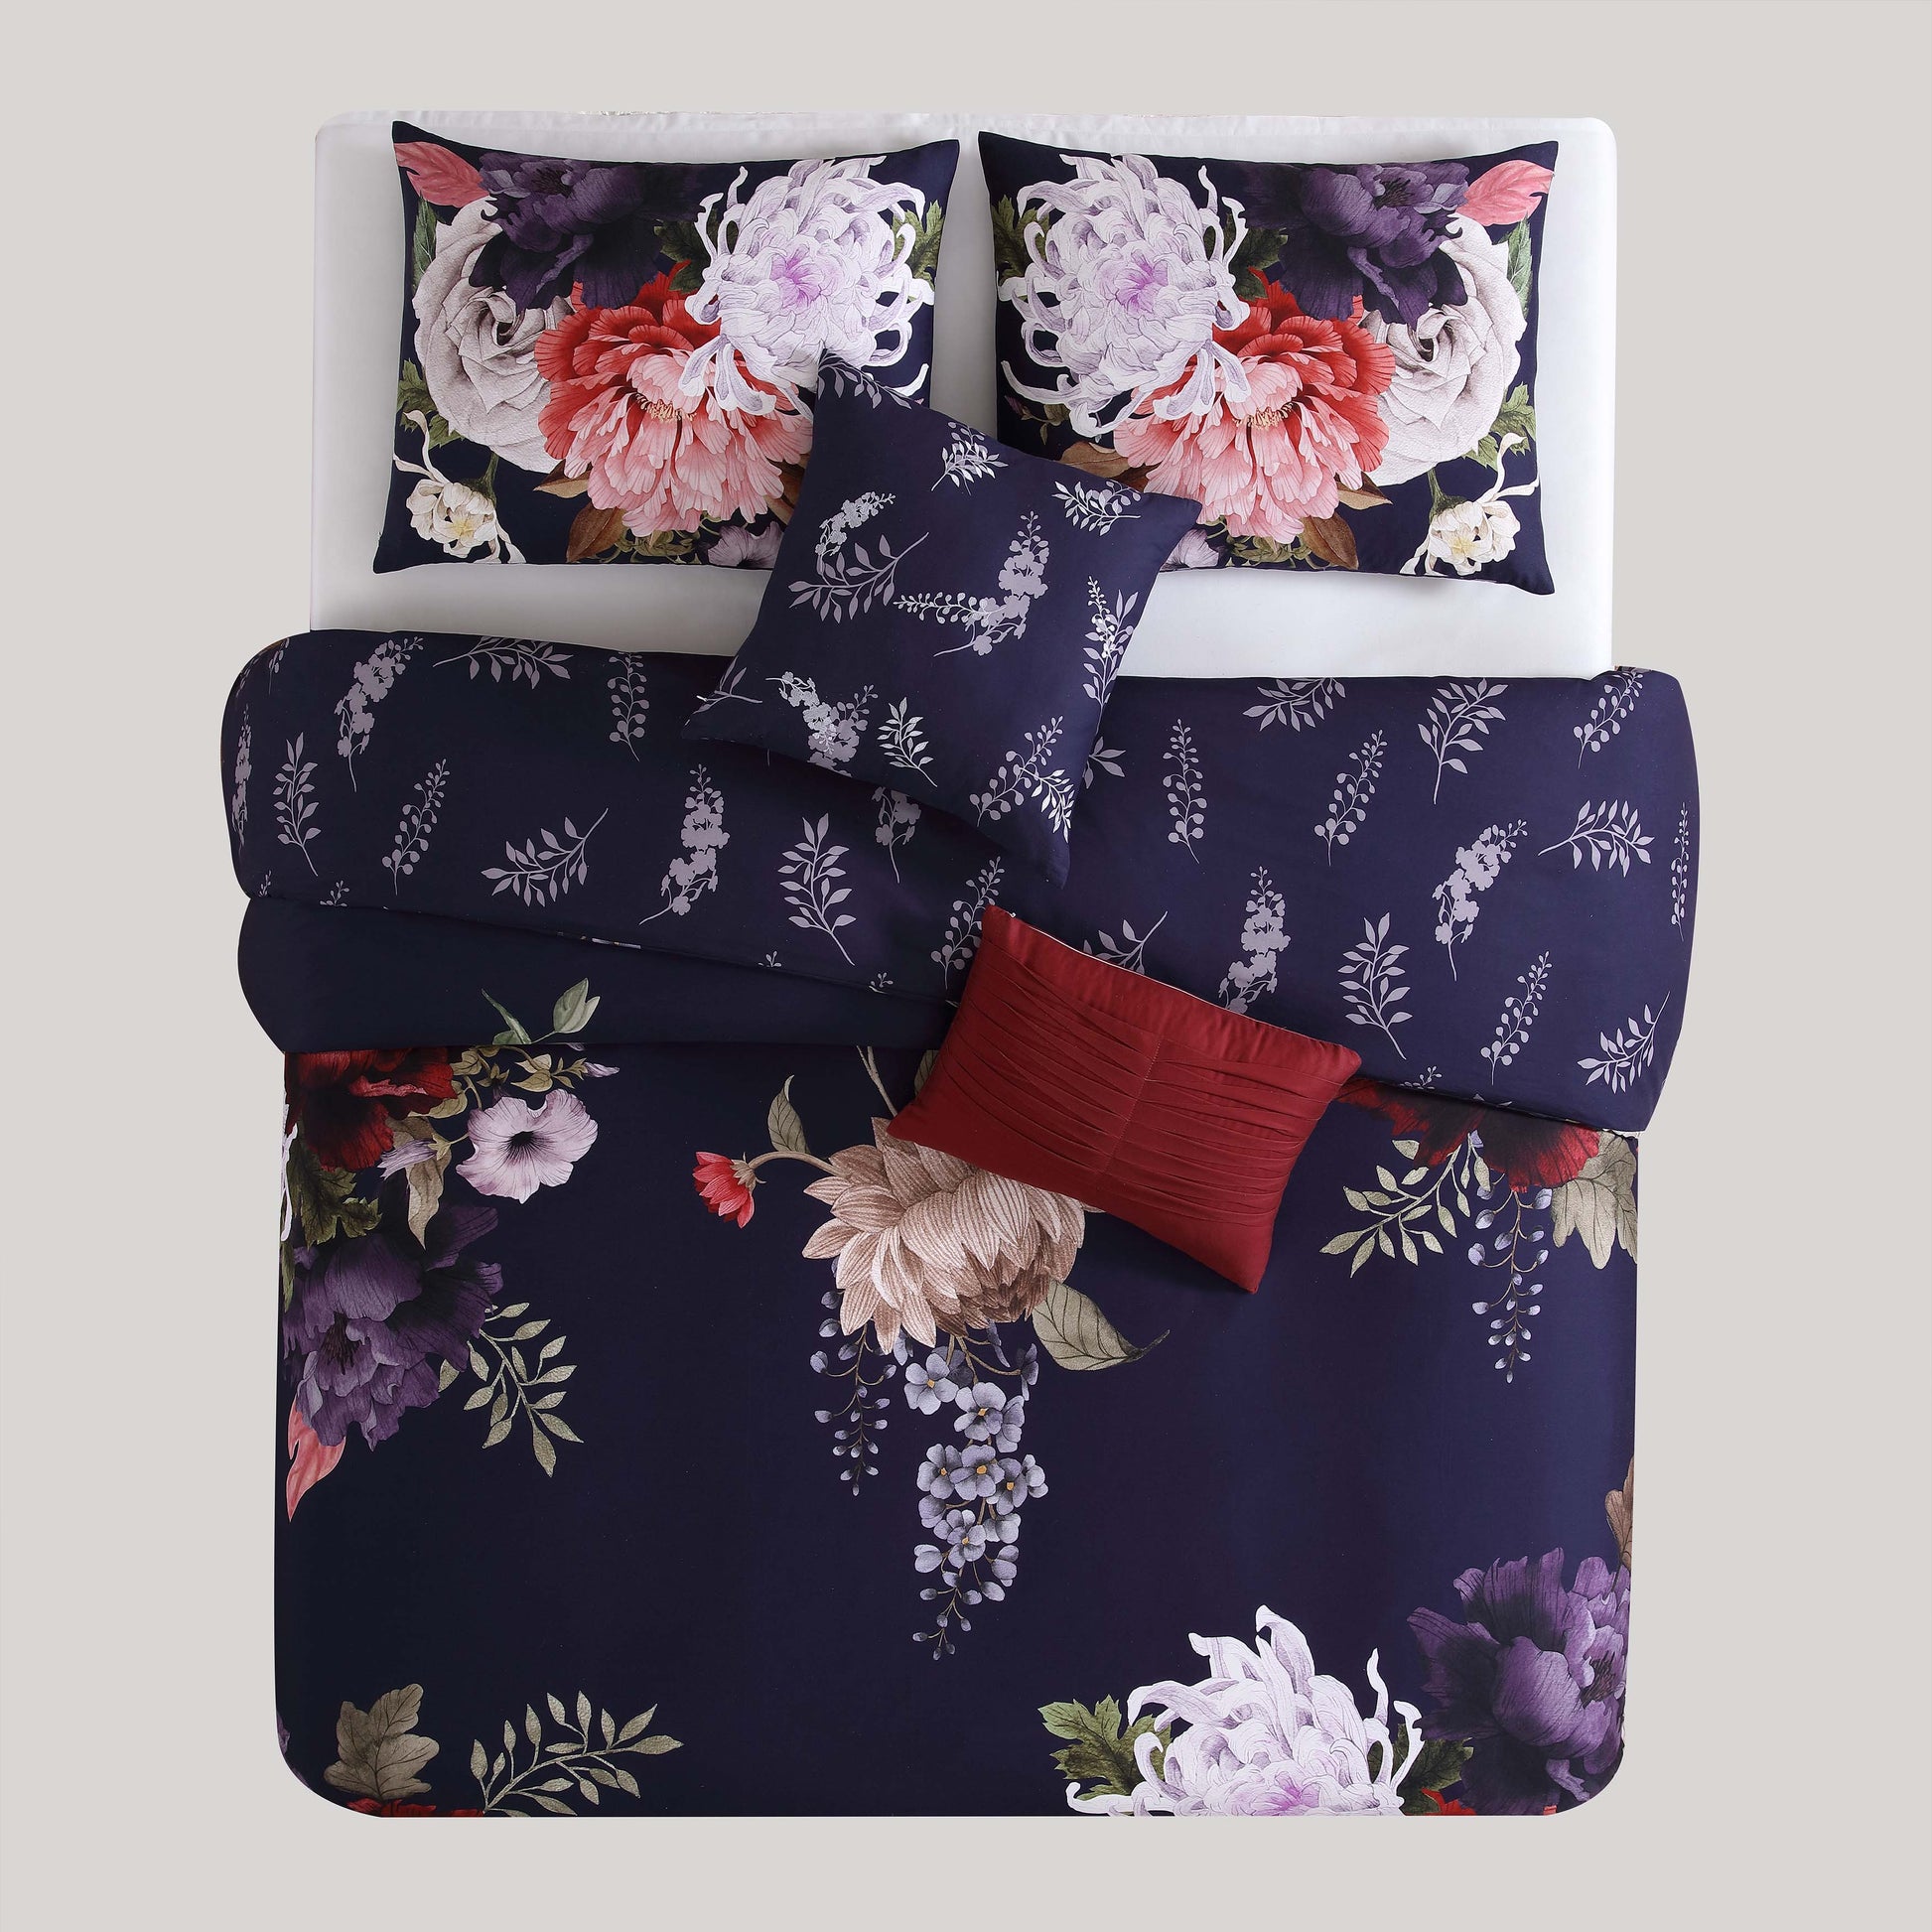 Bebejan Deep Purple Garden 100% Cotton 5-Piece Reversible Comforter Set Comforter Sets By Bebejan®